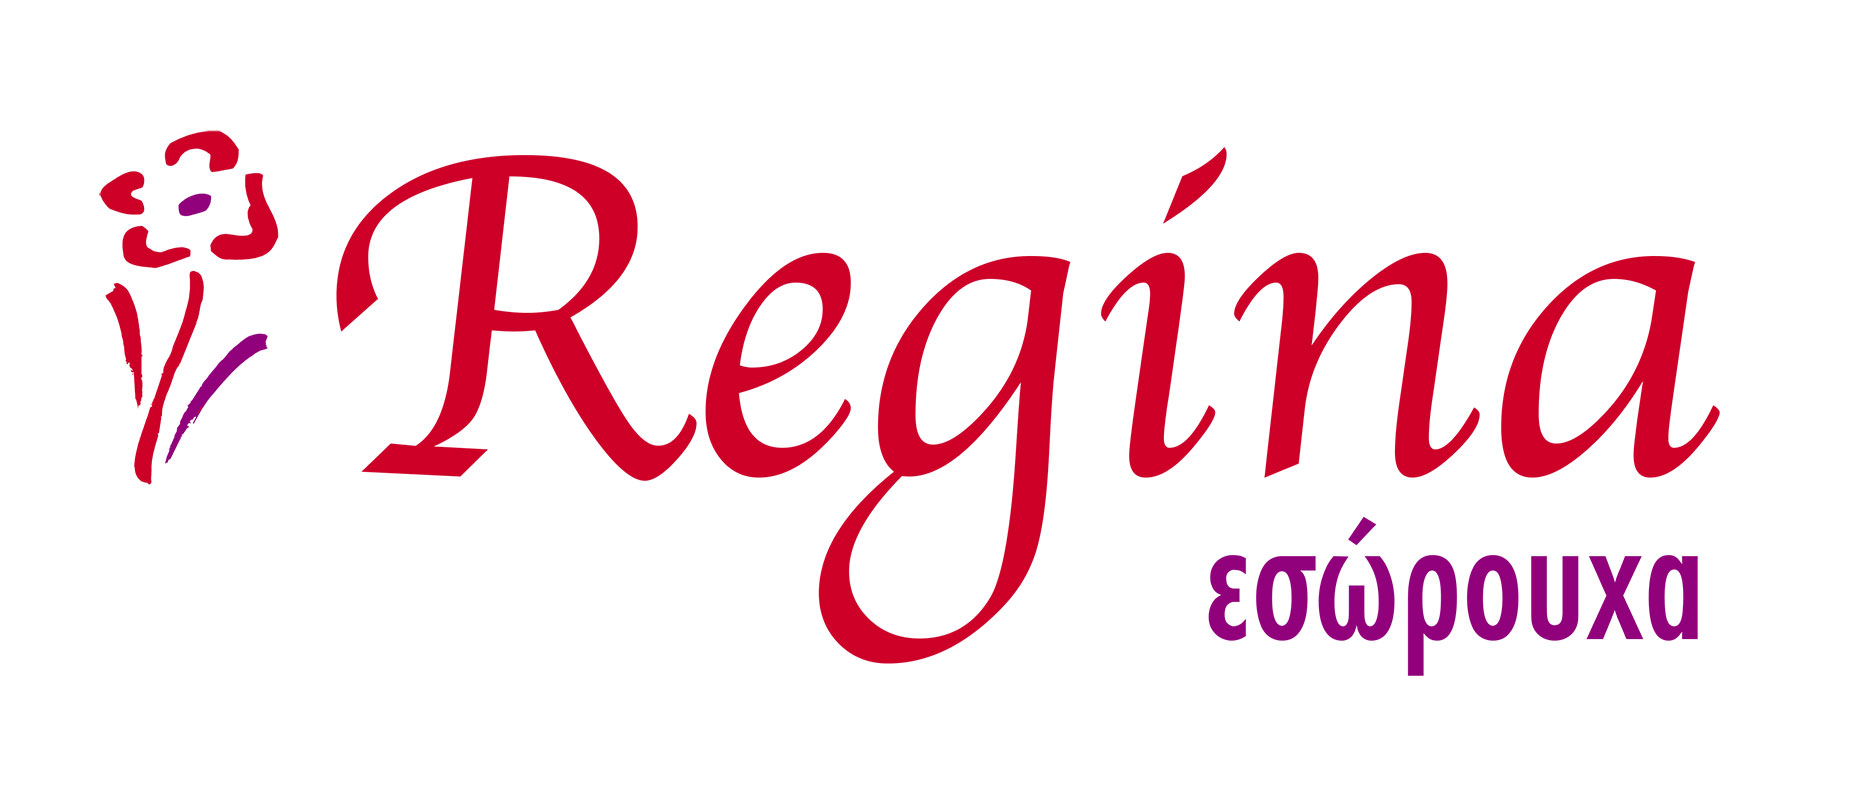 REGINA Logo